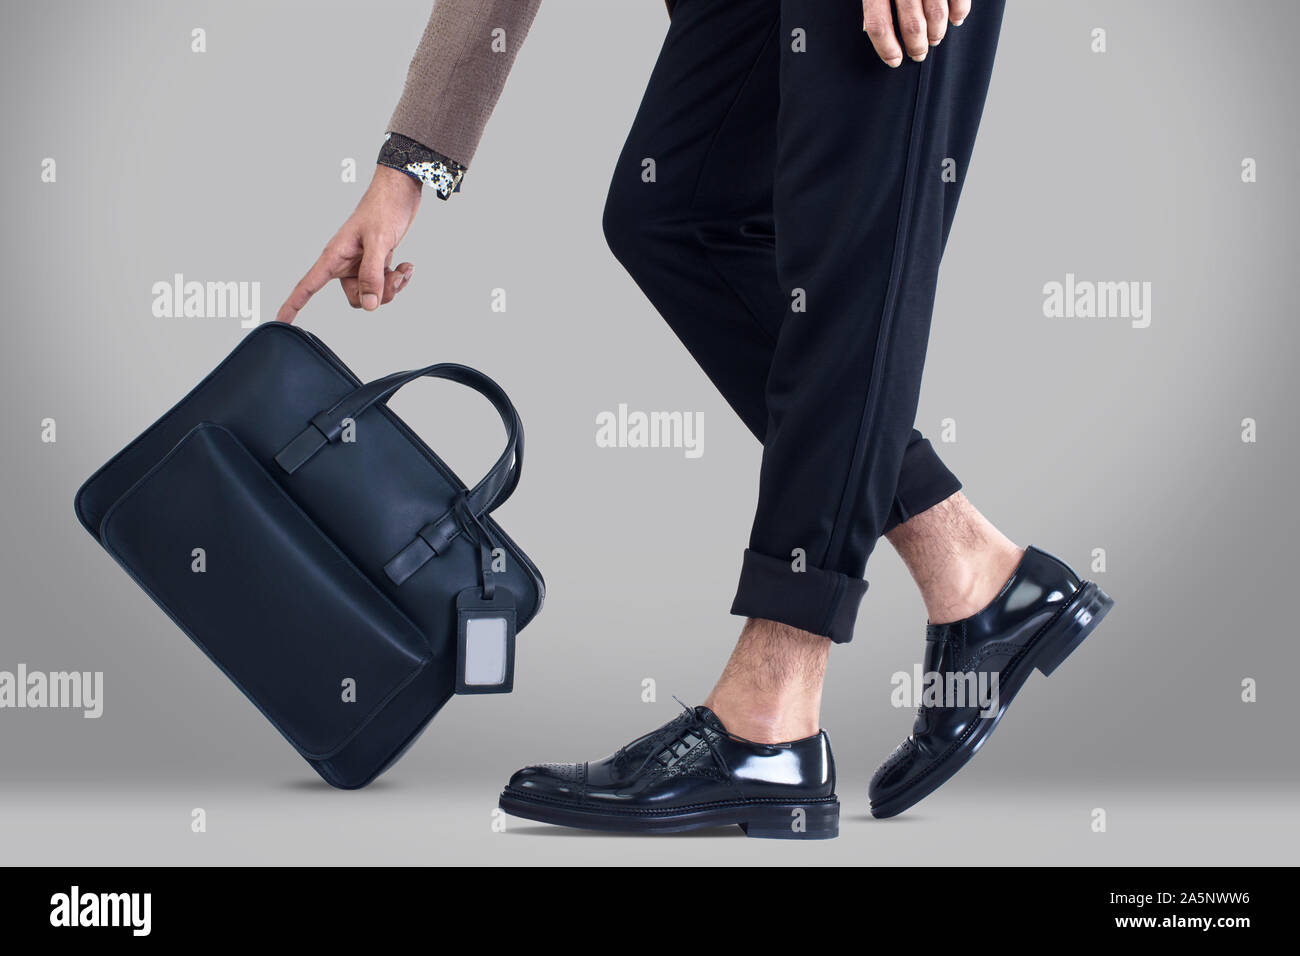 Smart Business costumi con custodia, senza marca marchi per campagne pubblicitarie, Corporate business images Foto Stock